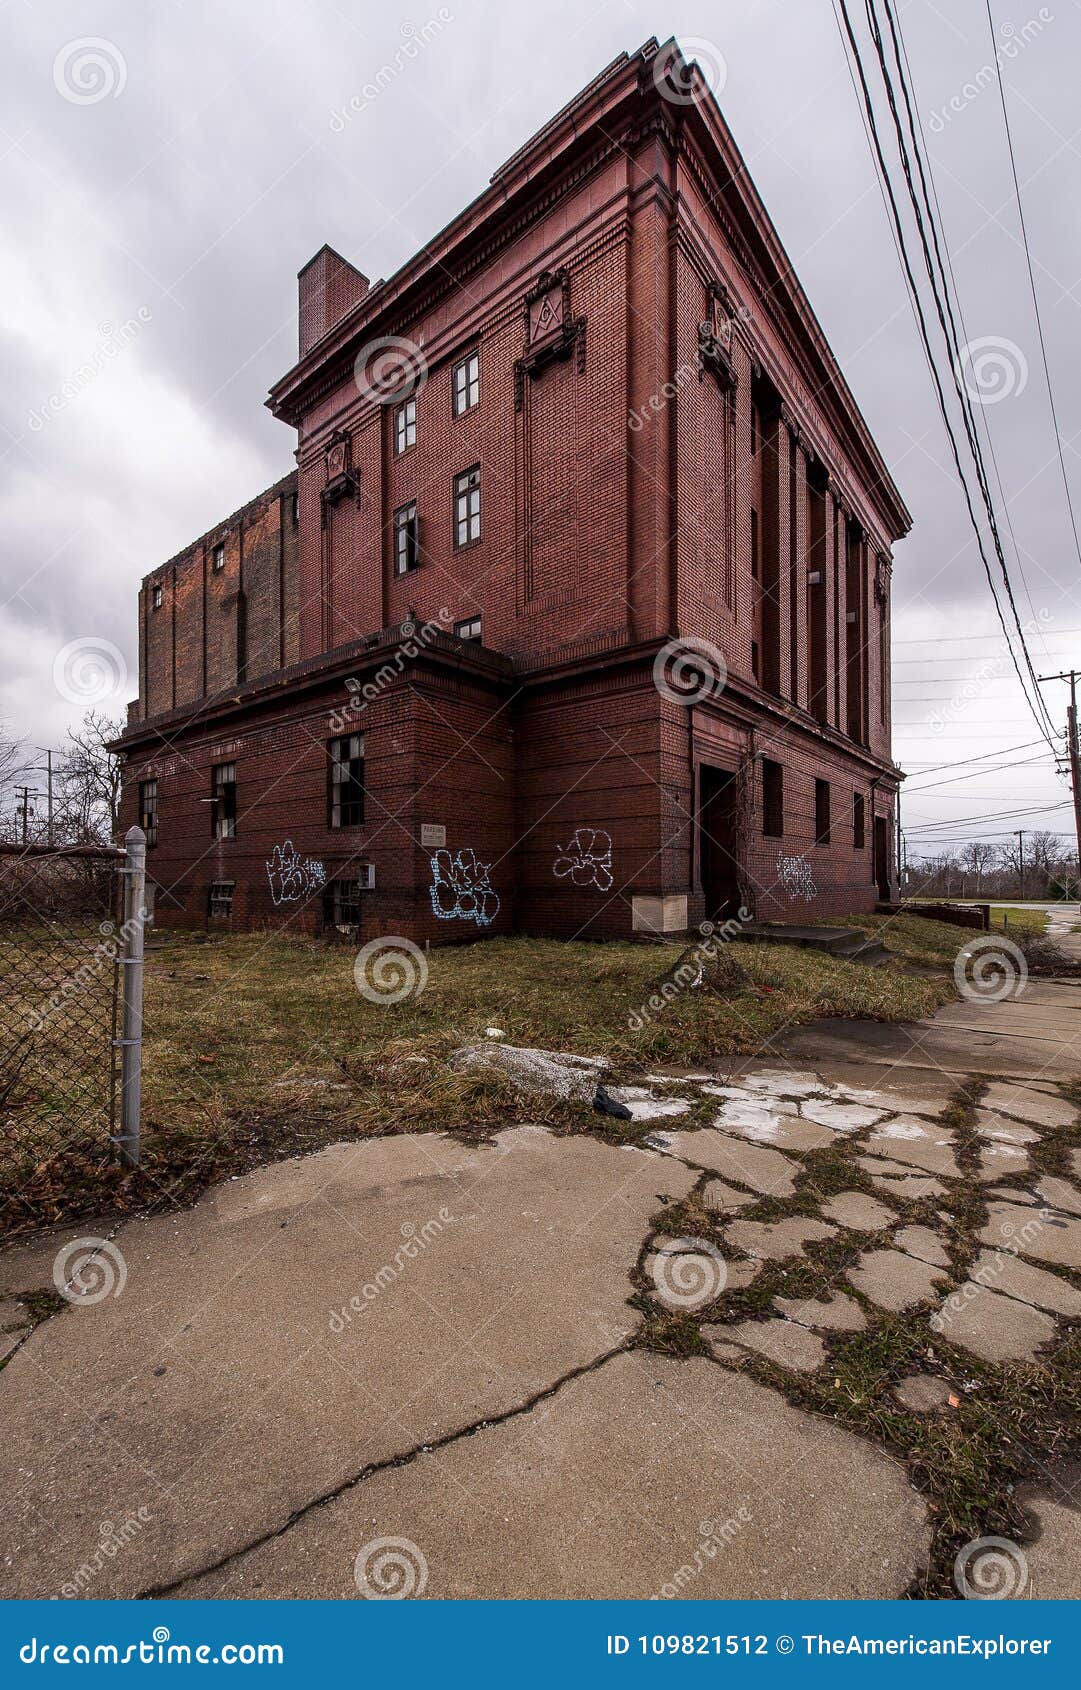 abandoned ashlar lodge no. 639 masonic temple - cleveland, ohio